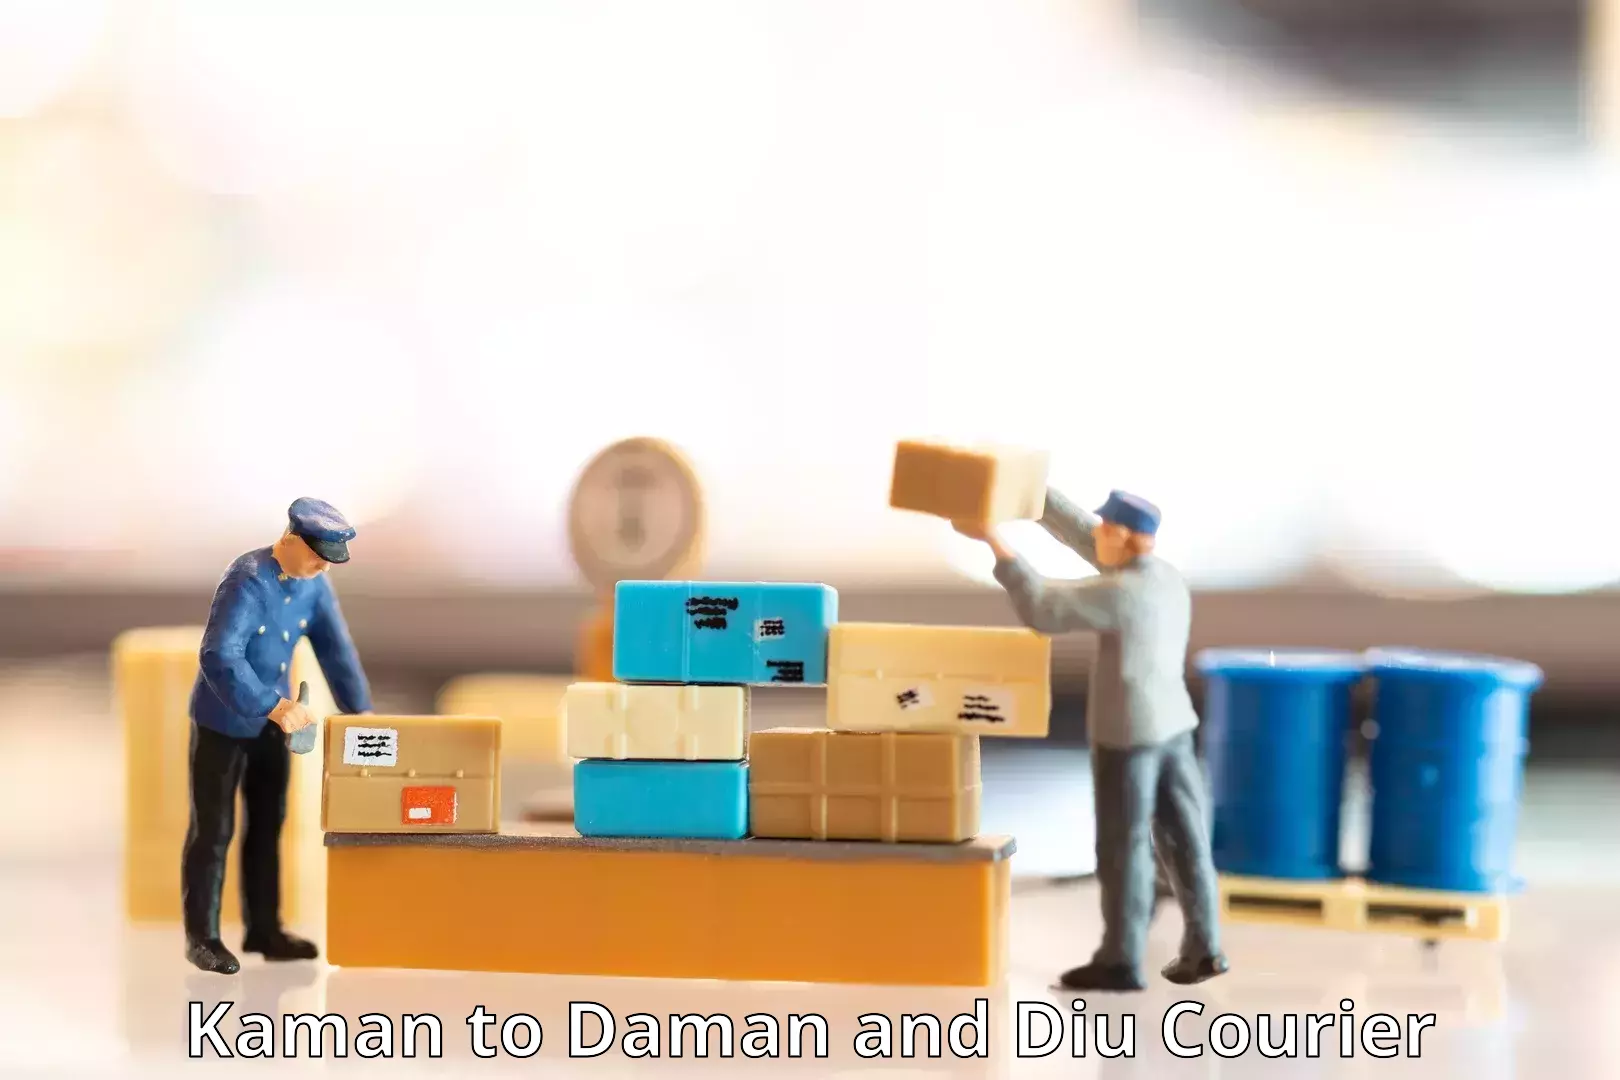 Express logistics service Kaman to Daman and Diu